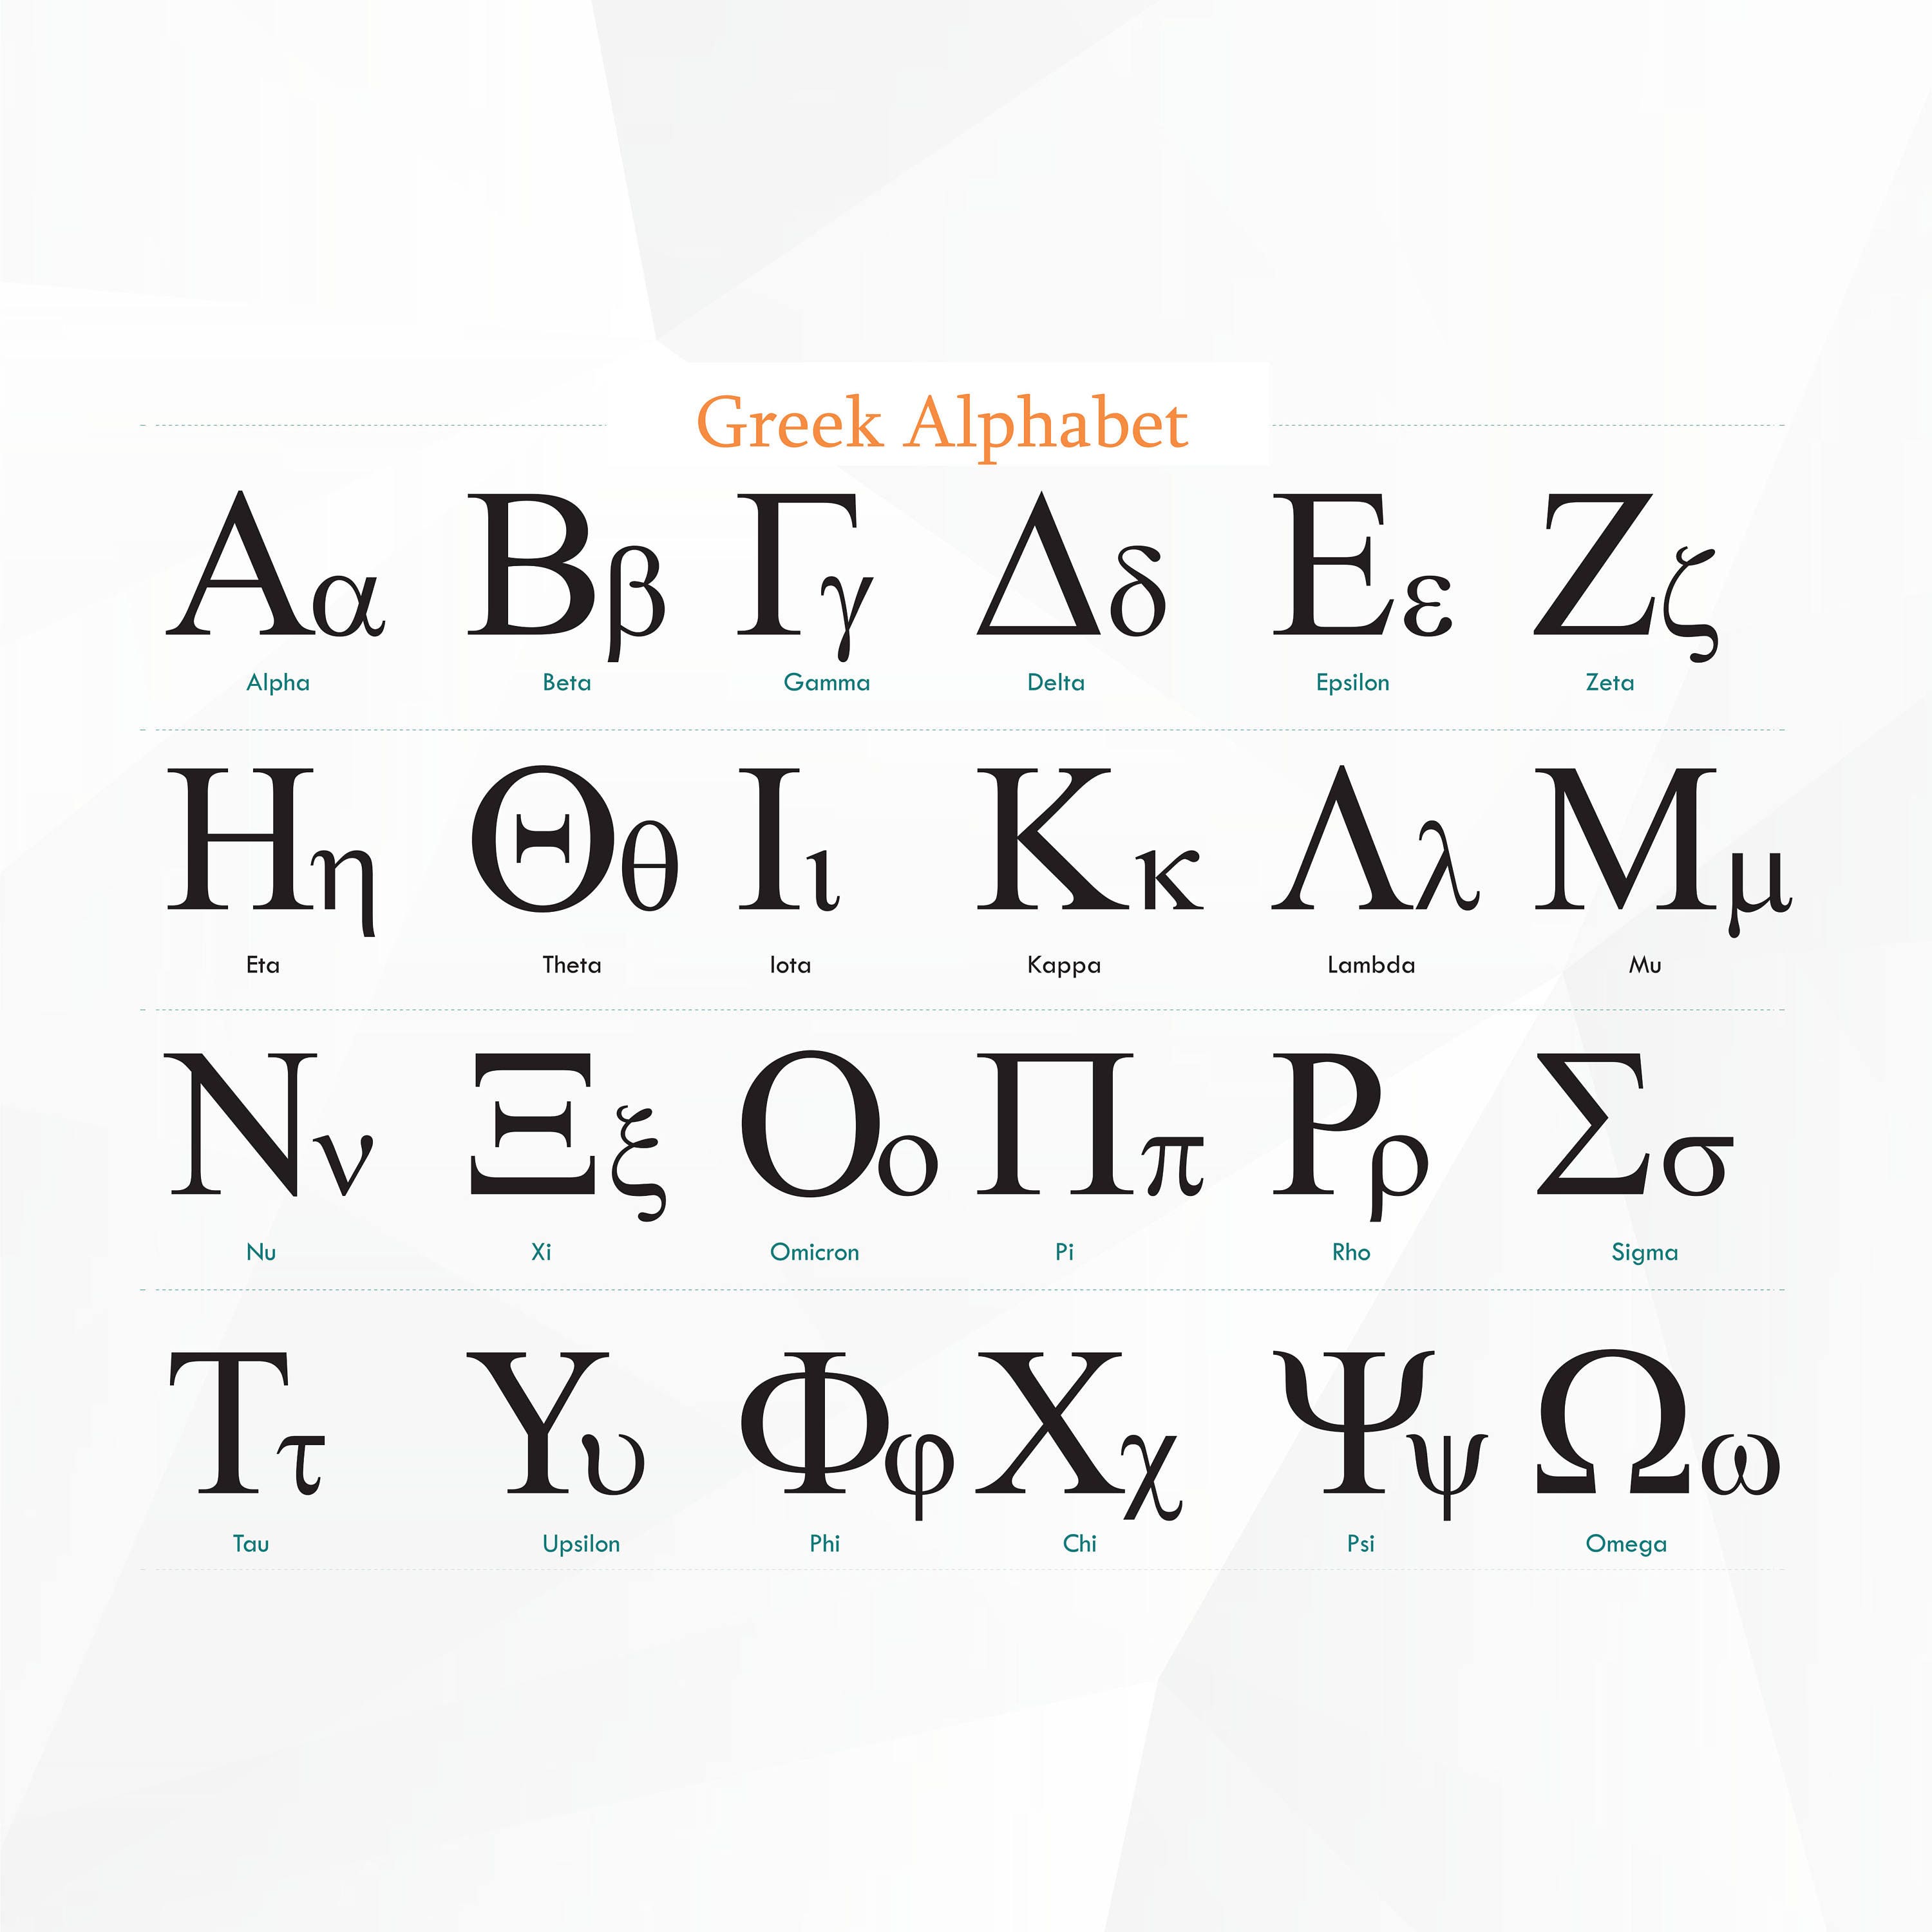 best adobe illustrator fonts for greek letters